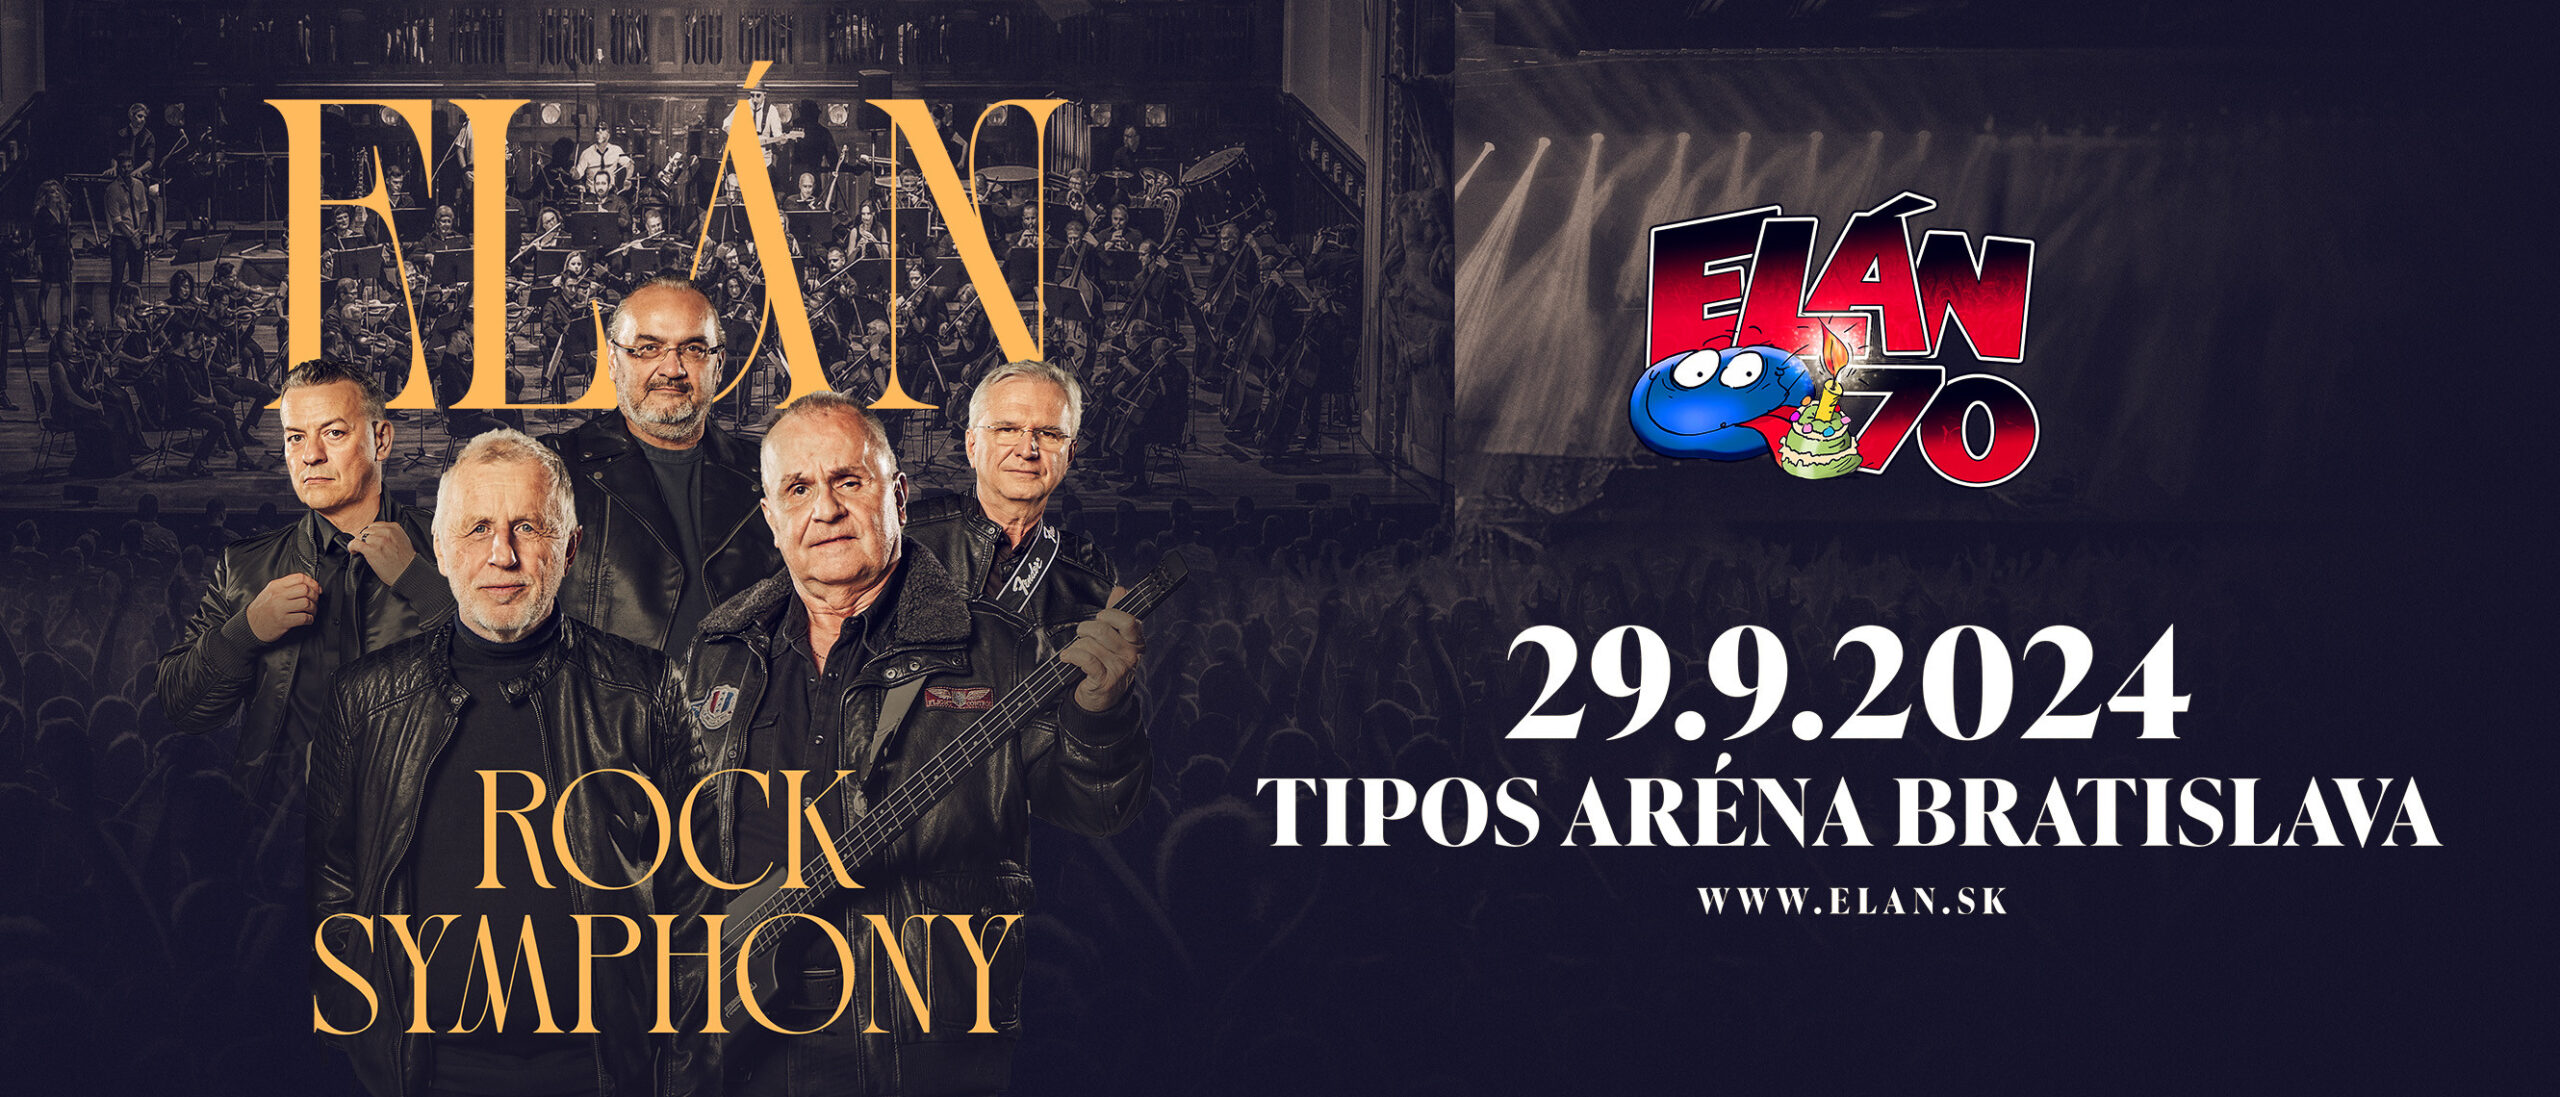 Elán Rock Symphony 29.9.2024 TIPOS ARÉNA BRATISLAVA